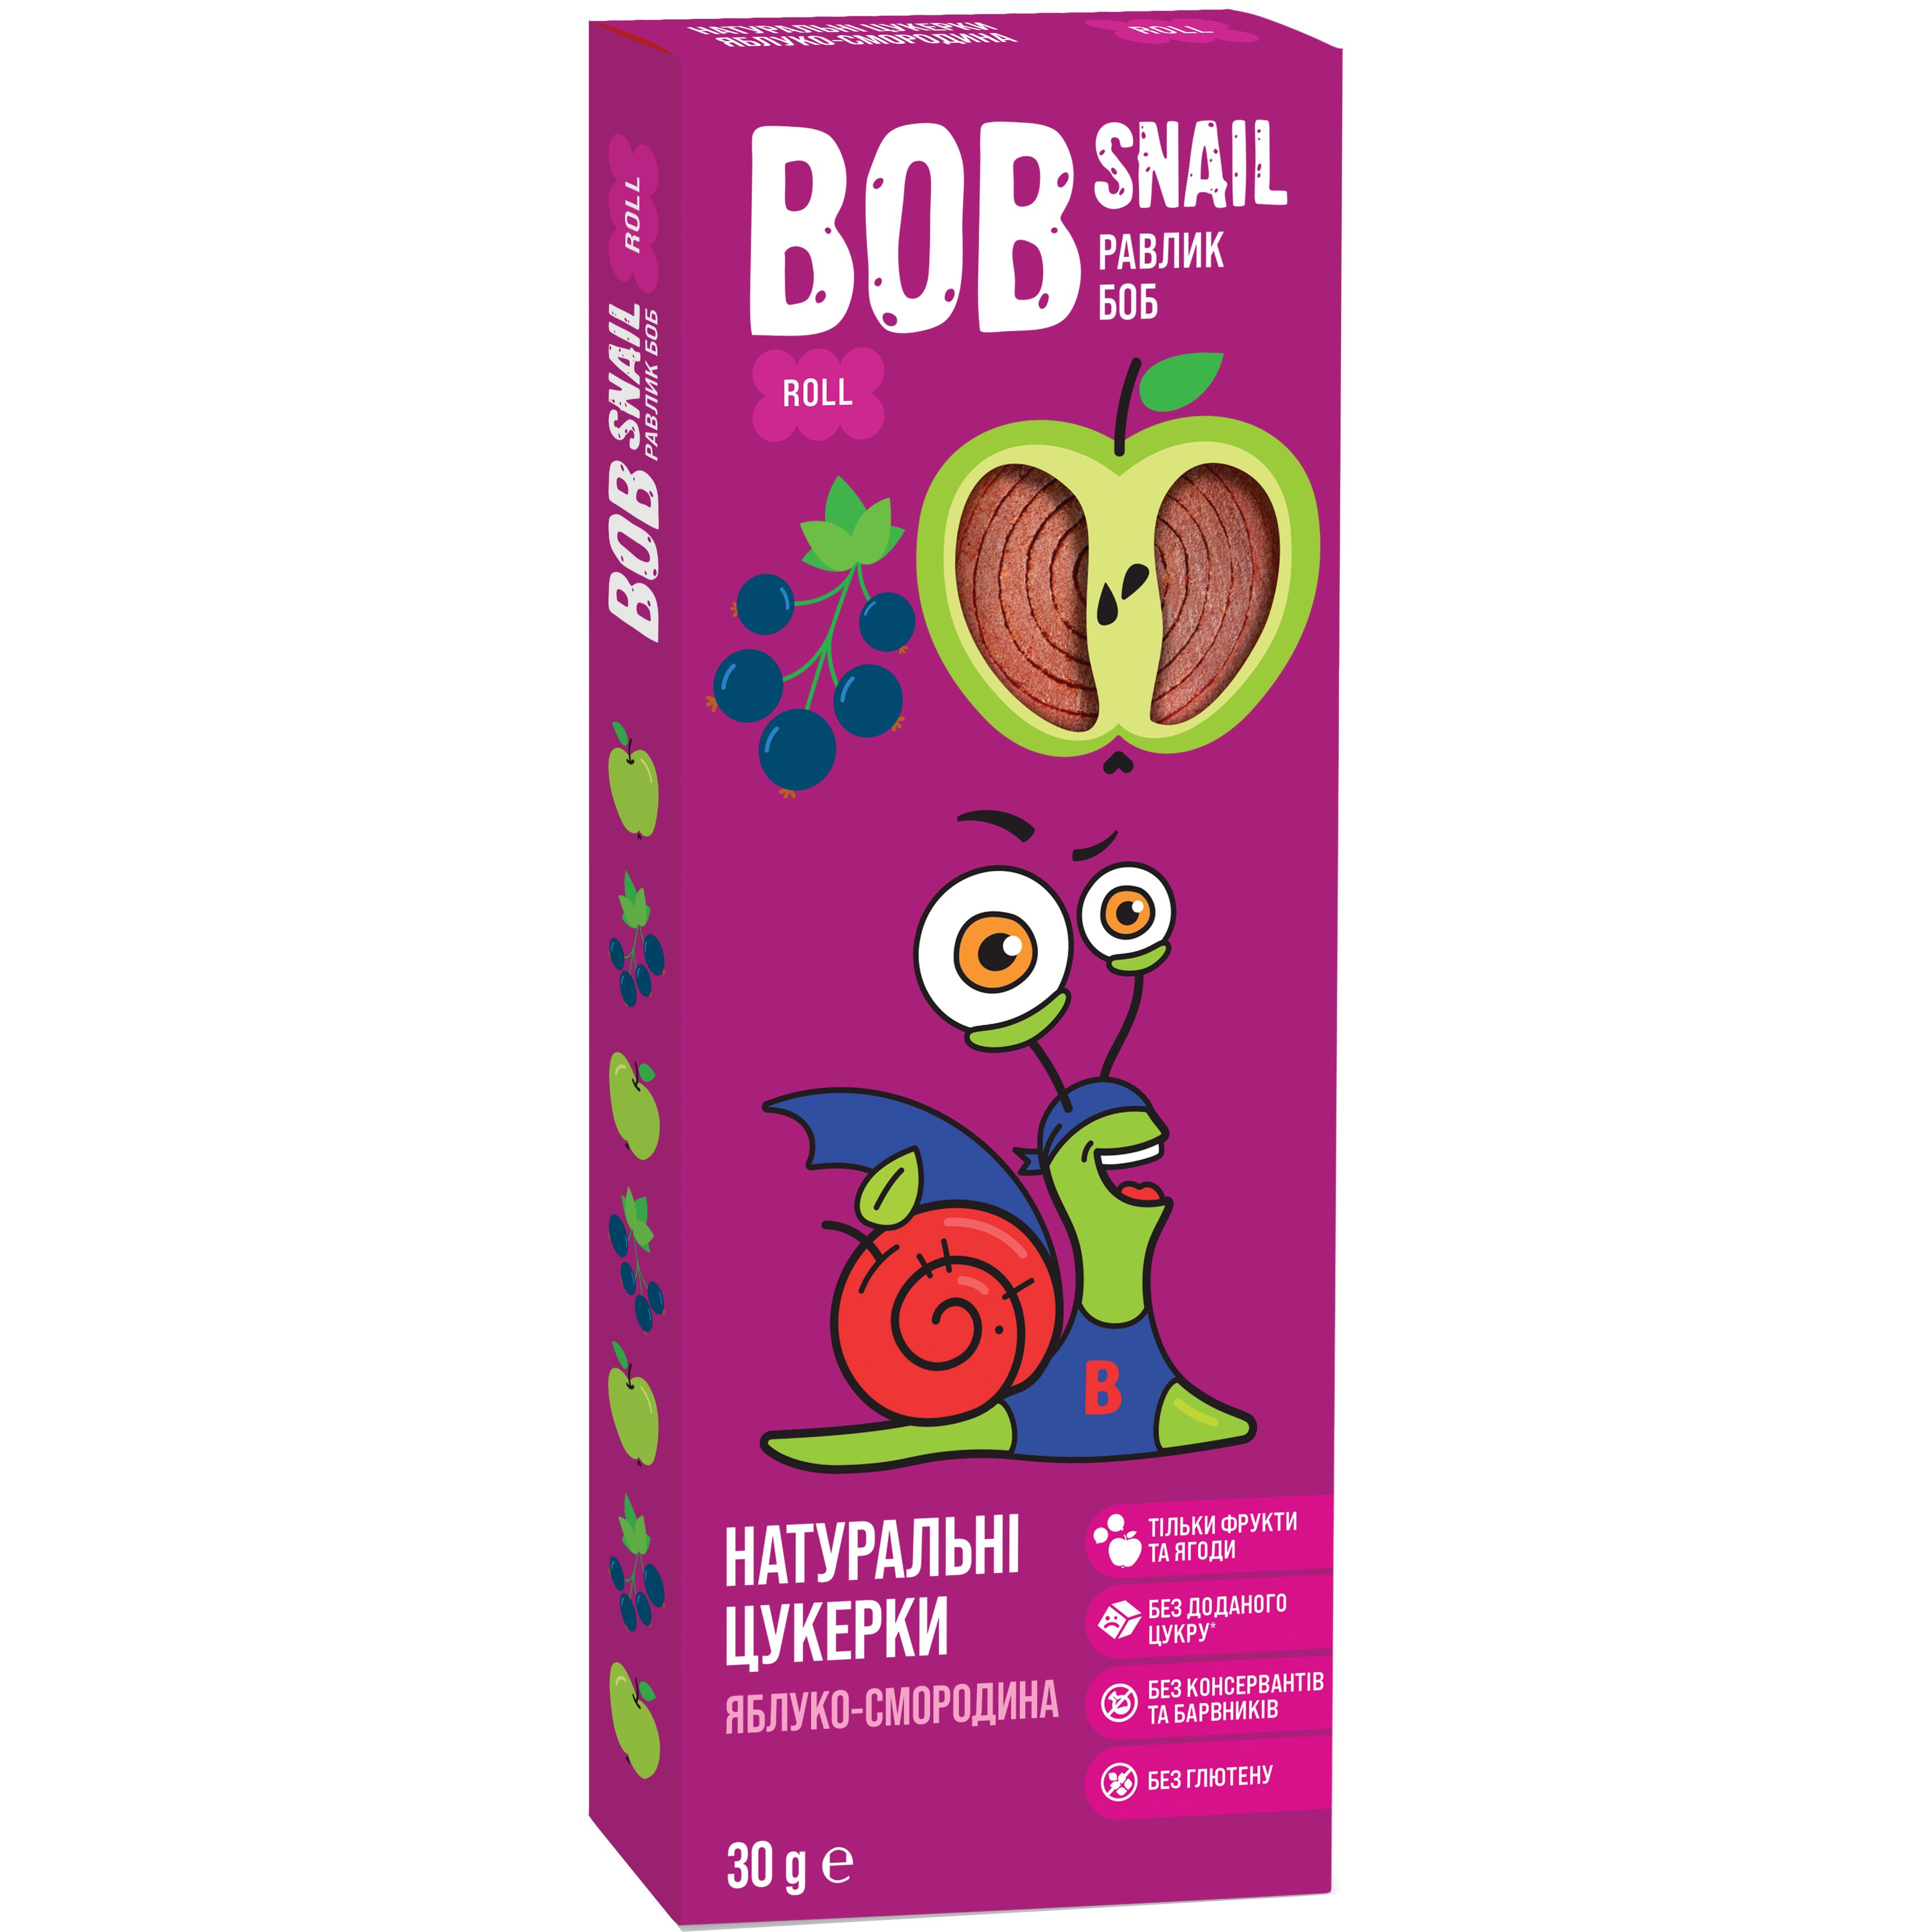 Фруктовые яблочно-черносмородиновые конфеты Bob Snail 30 г - фото 1